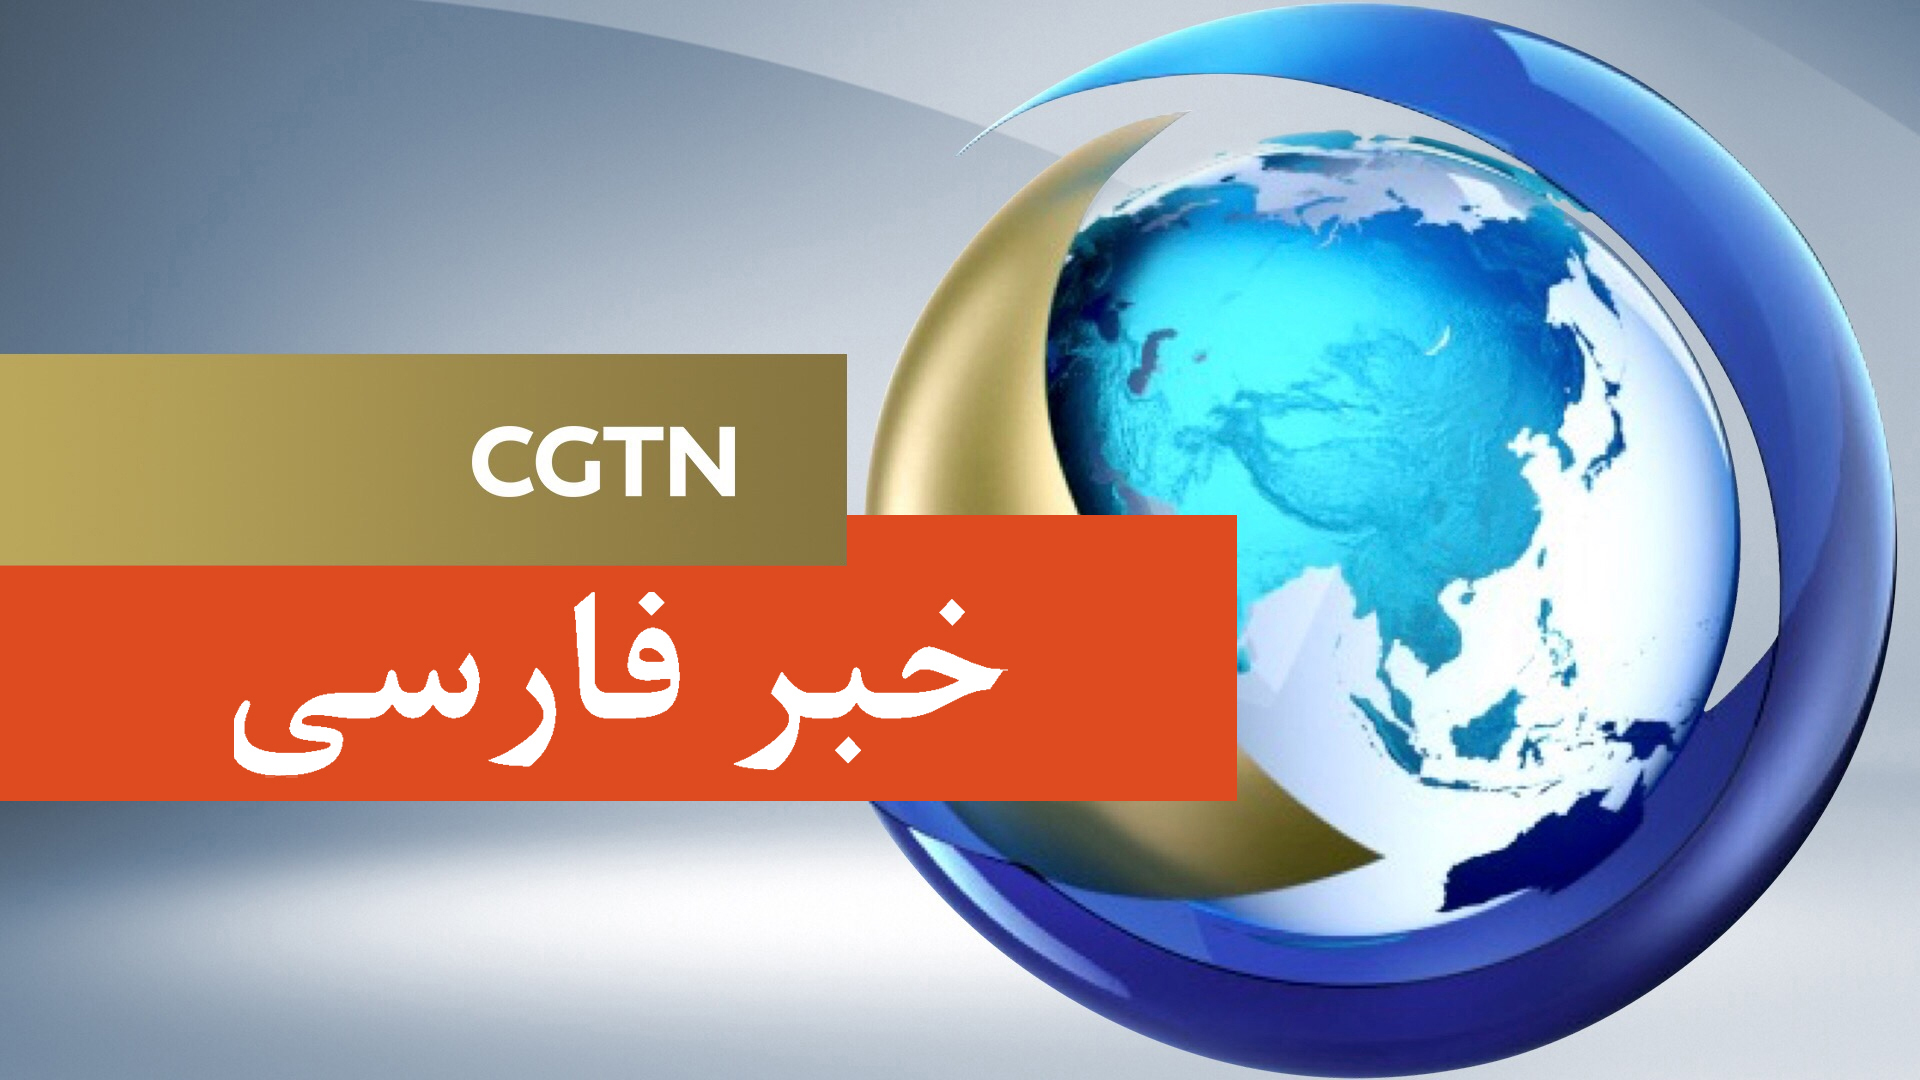 شنیده شدن صدای انفجار در شهر قهجاورستان در نزدیکی فرودگاه اصفهان و پایگاه هشتم شکاری نیروی هوایی ارتش ایرانا